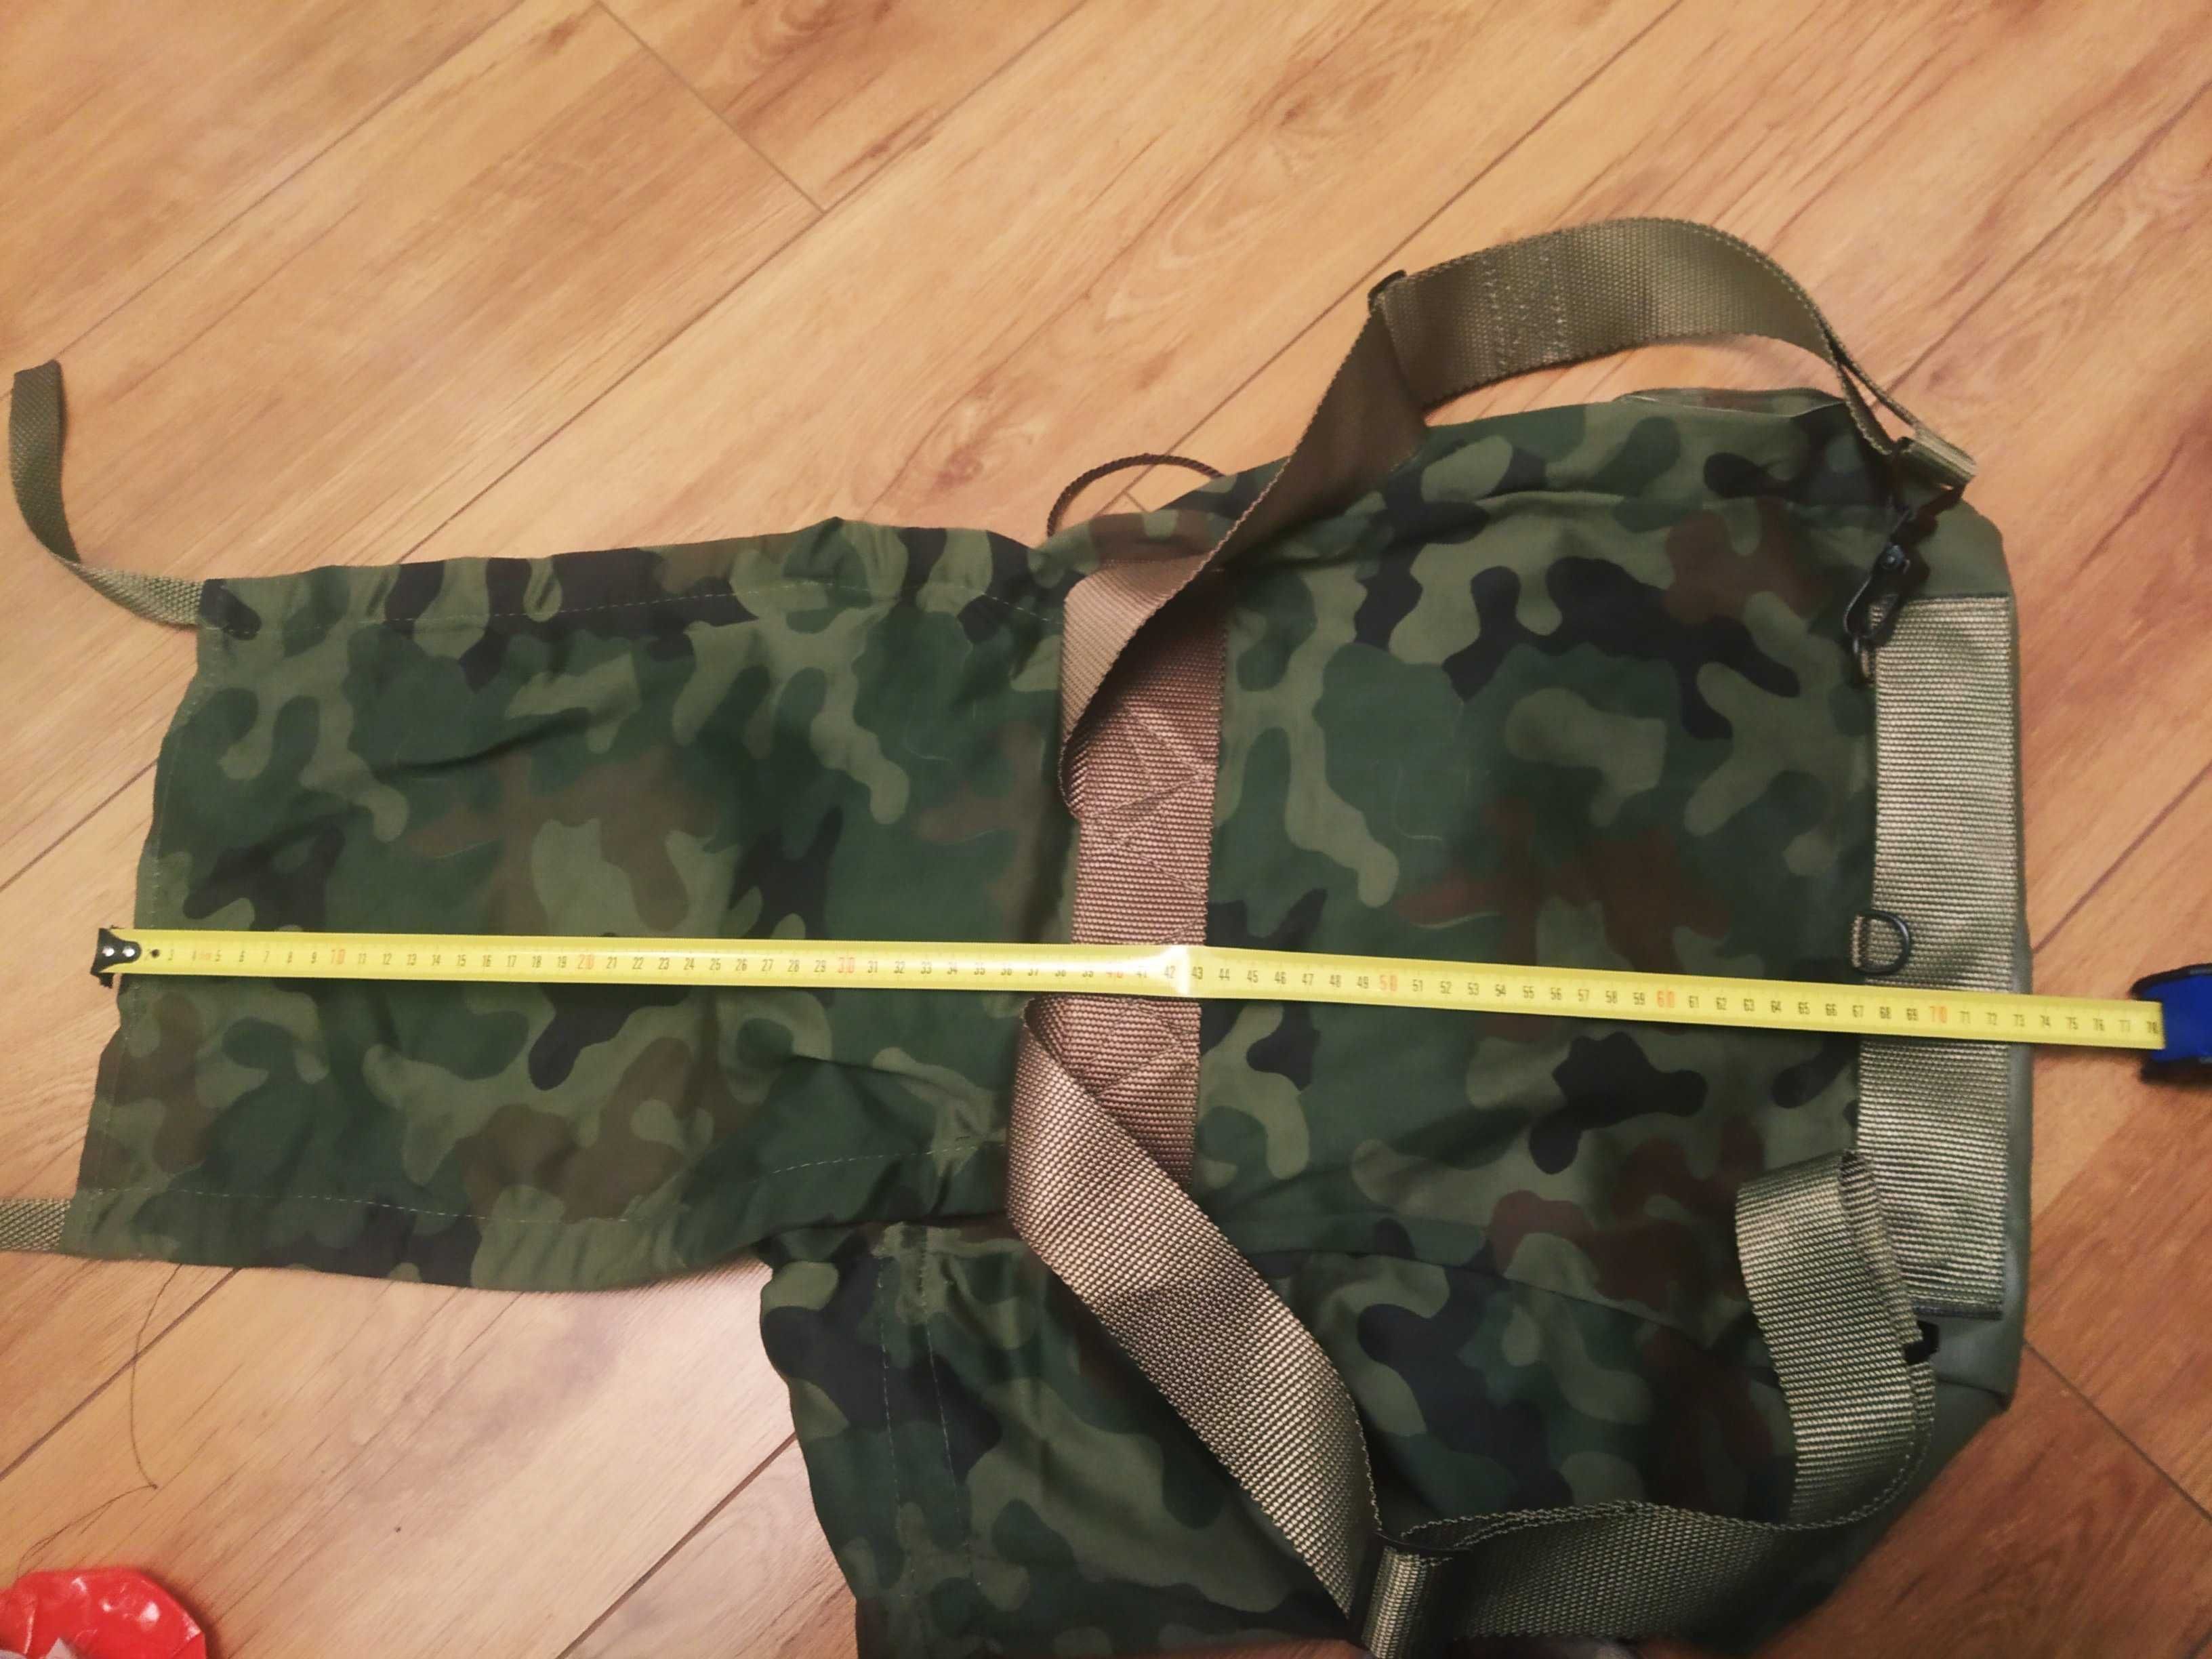 Plecak wojskowy bardzo pakowny